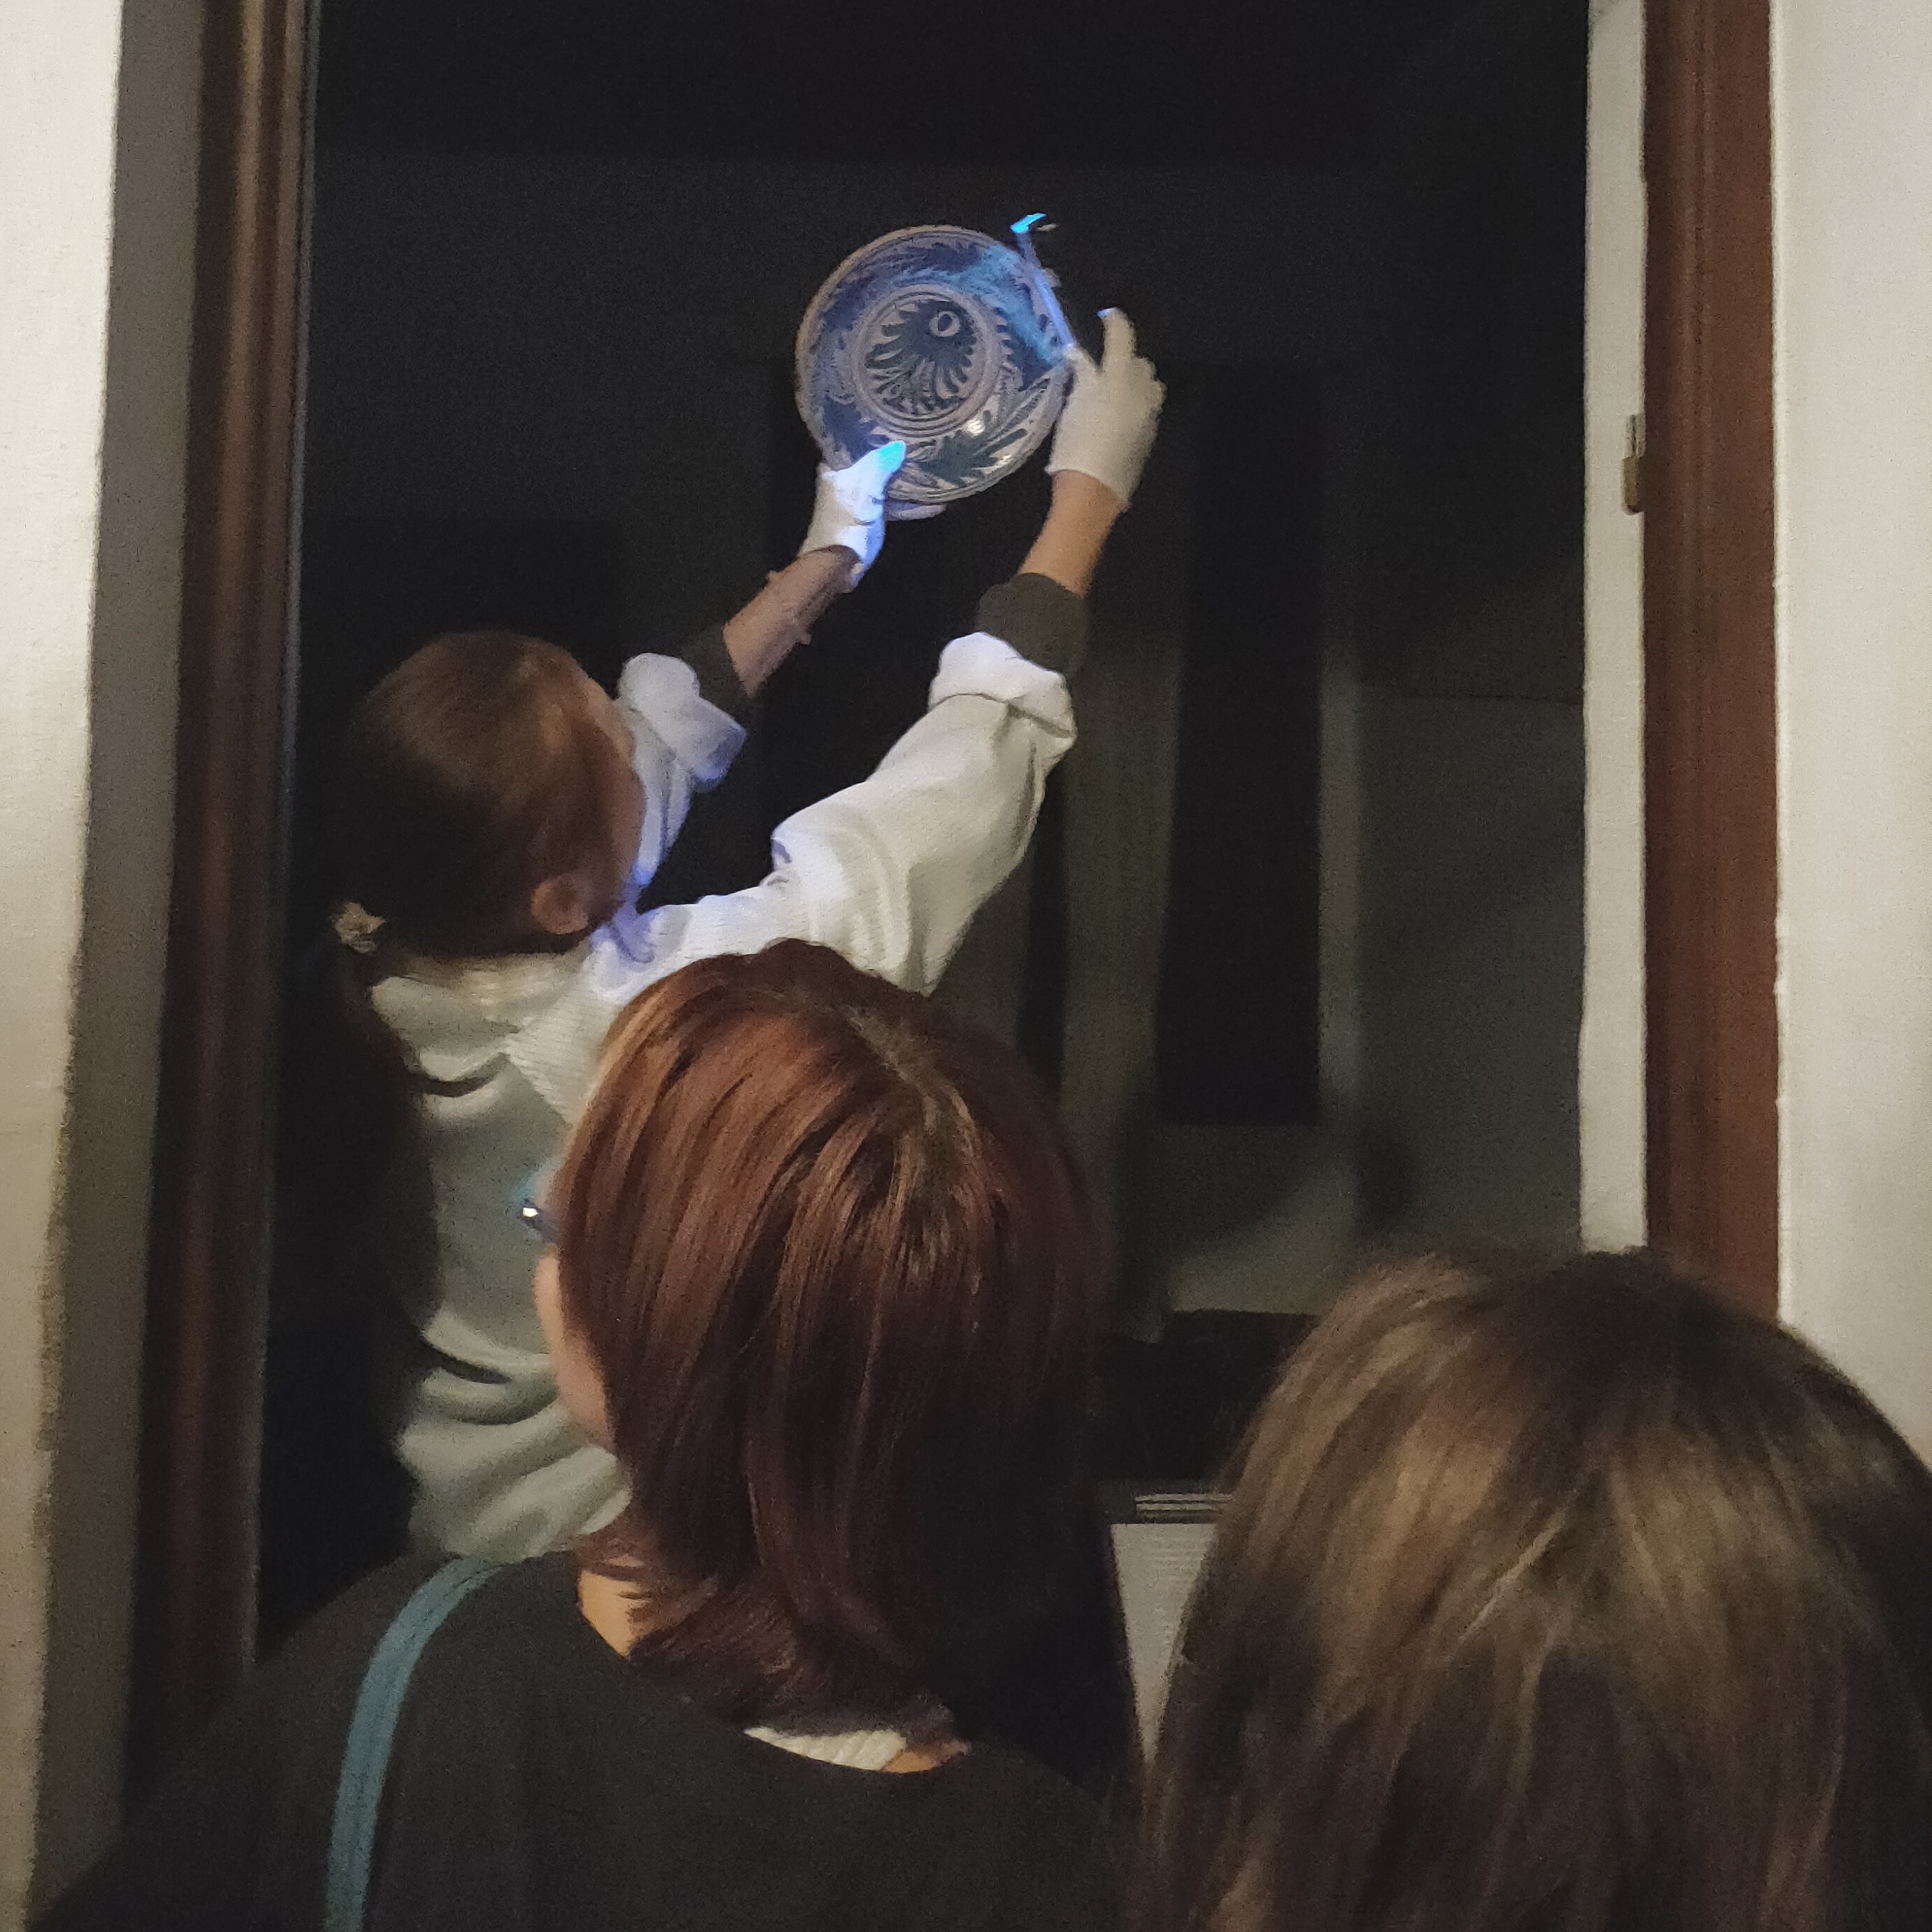 En una estancia interior, una especialista muestra a varias personas cómo la luz azul puede revelar detalles de una vasija de cerámica. 